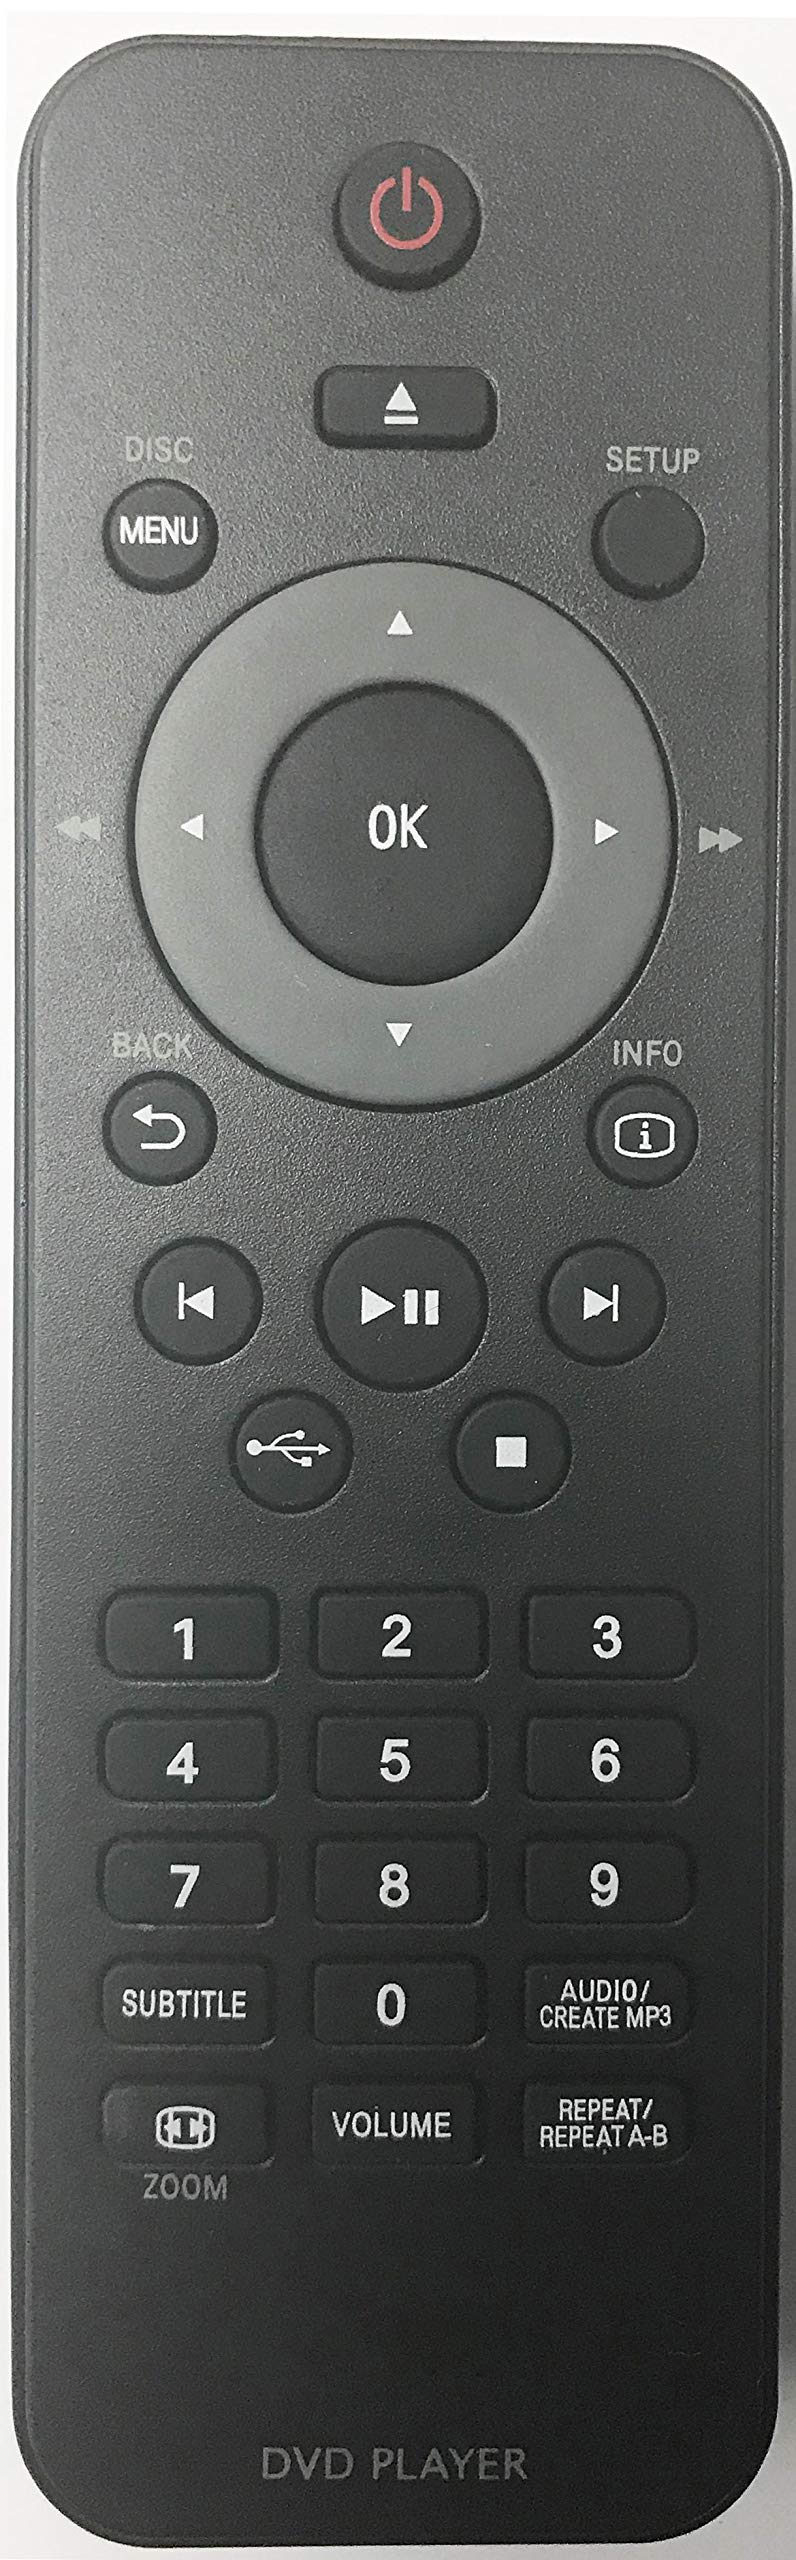 Smartby Remote Control Compatible with Philips DVD DVP3962, DVP3980, DVP3982, 242254901929,996510010476 - LeoForward Australia